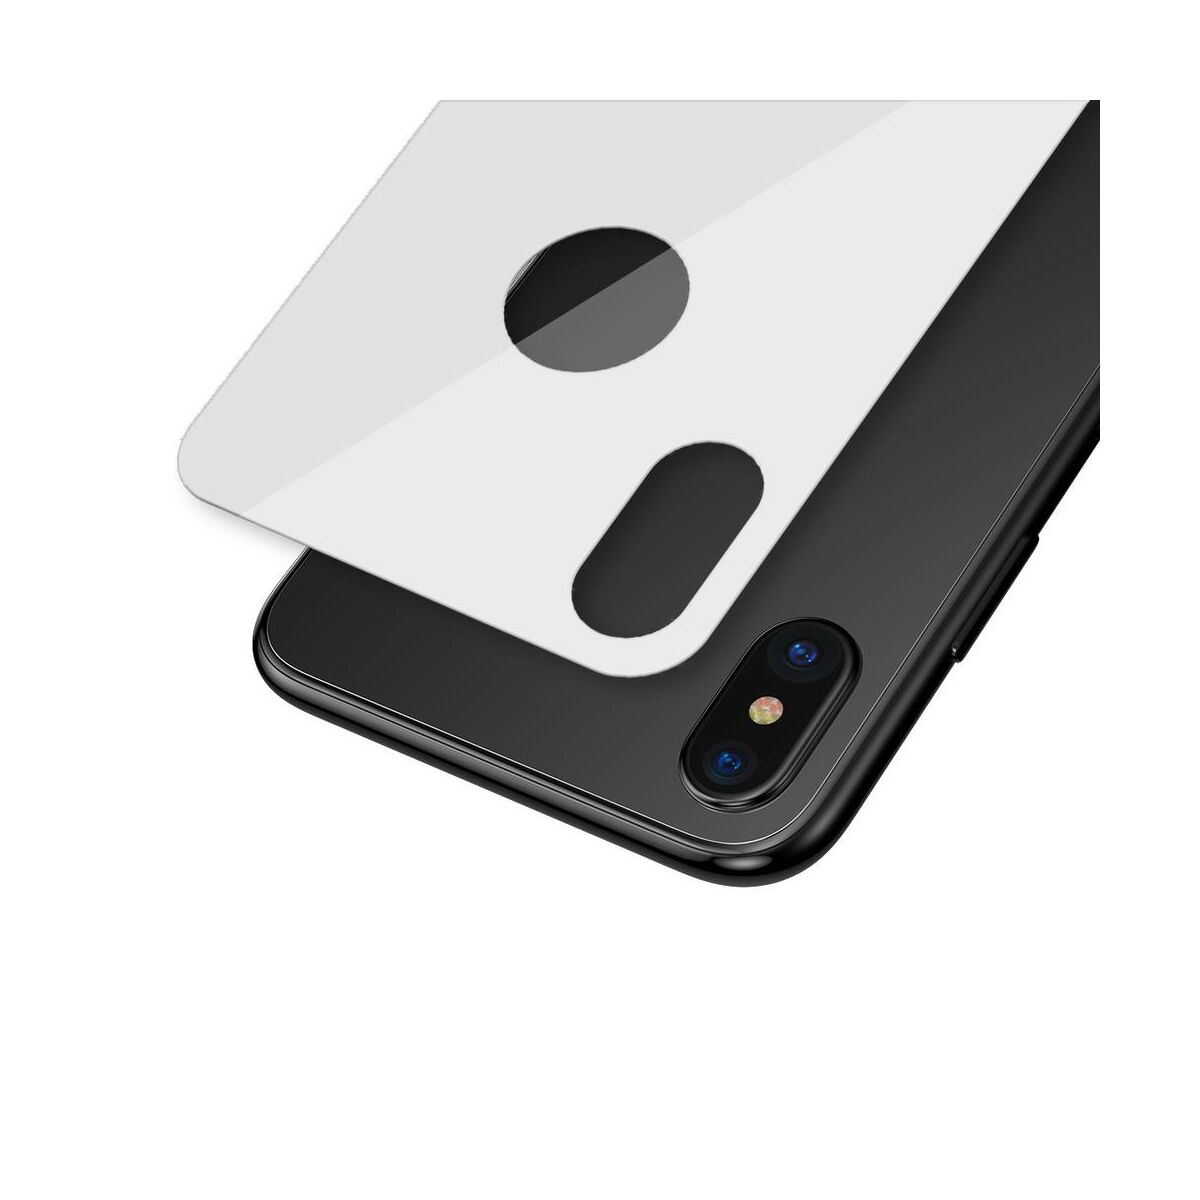 Kép 6/9 - Baseus iPhone XS Max (6.5") 0.3 mm, teljes lefedésre, edzett üveg hátlap védő fólia, fehér (SGAPIPH65-BM02)